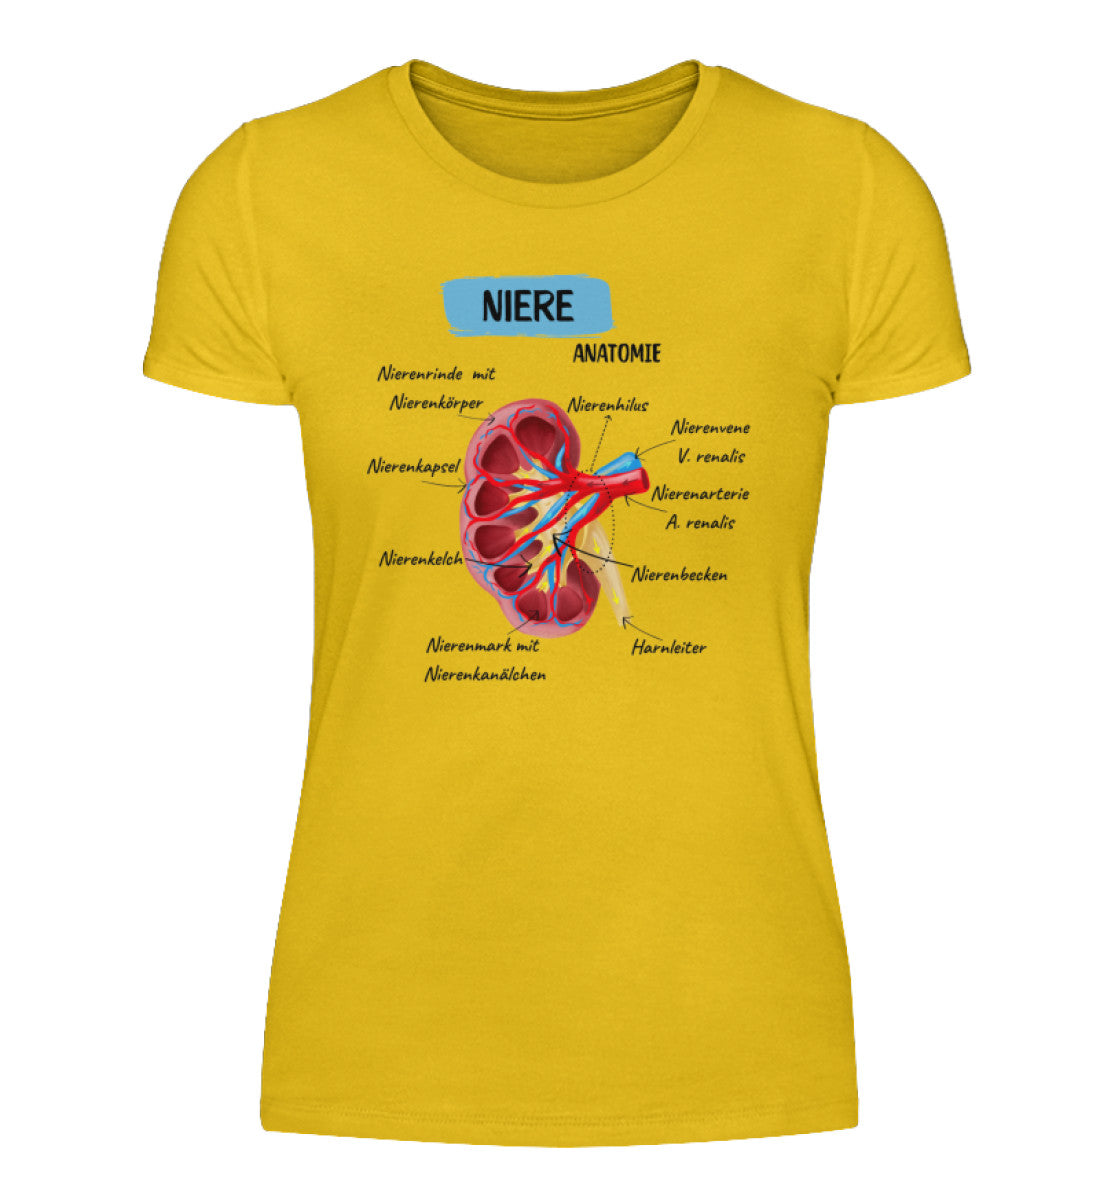 Niere Anatomie Frauen T-Shirt